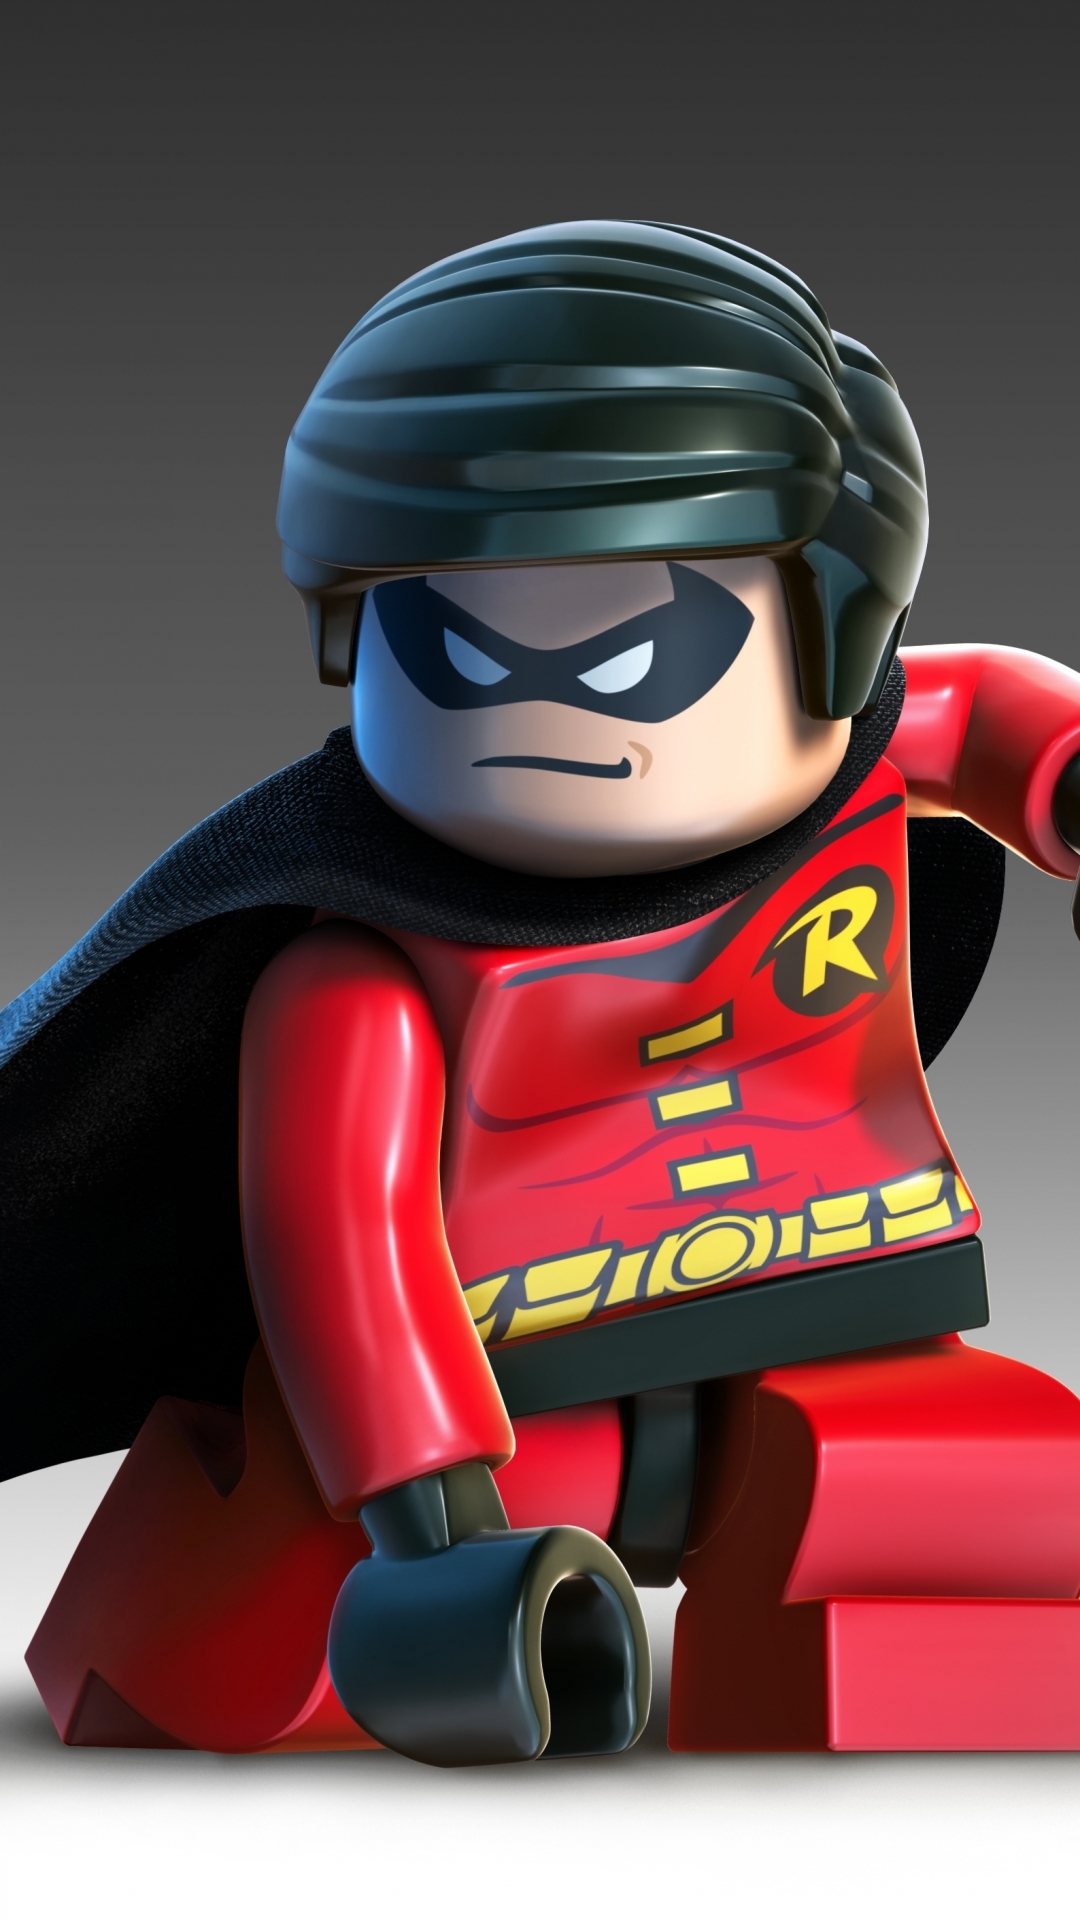 LEGO Batman 2: DC Super Heroes Phone Wallpaper